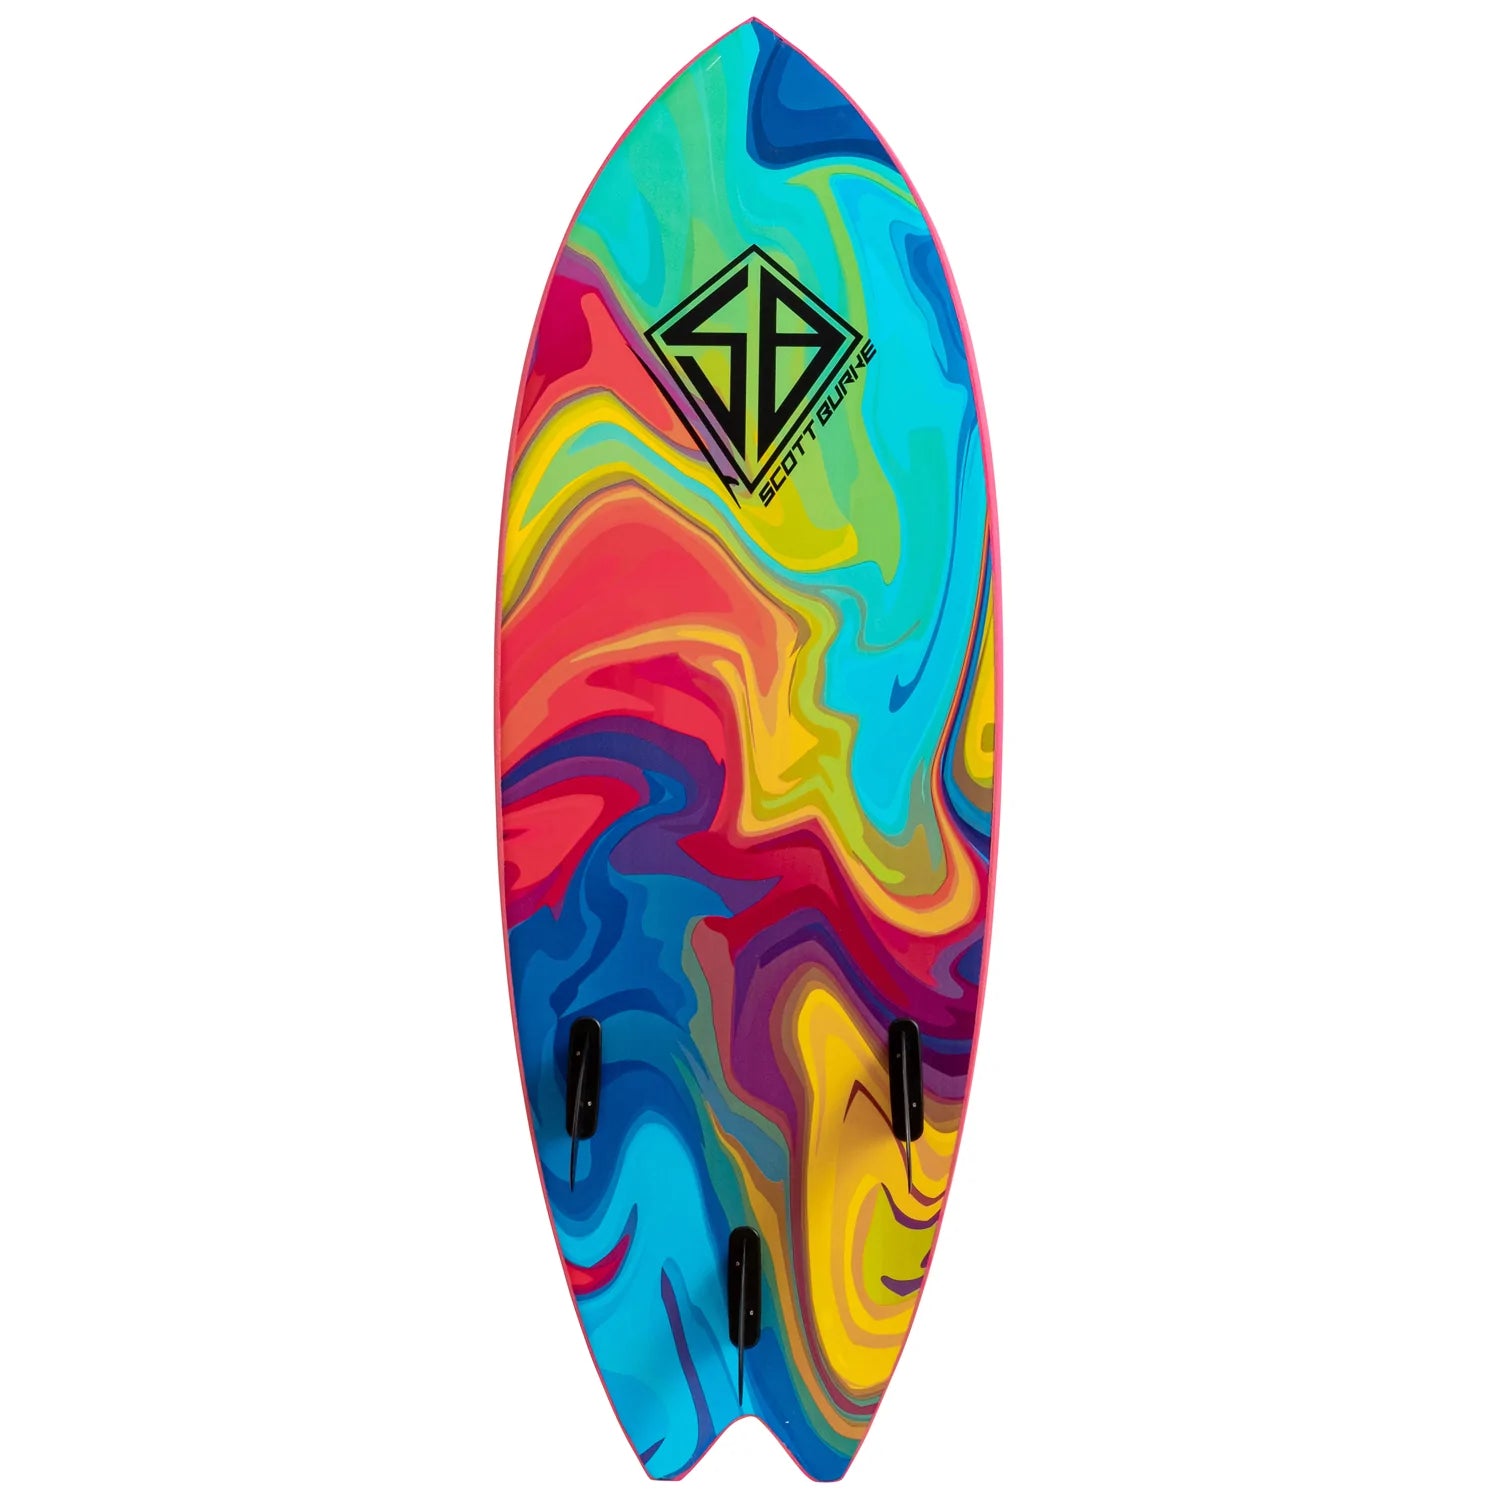 CBC - Foam Surfboard - Softboard - 5'2 Baja Fish - Pink / Rainbow Slick